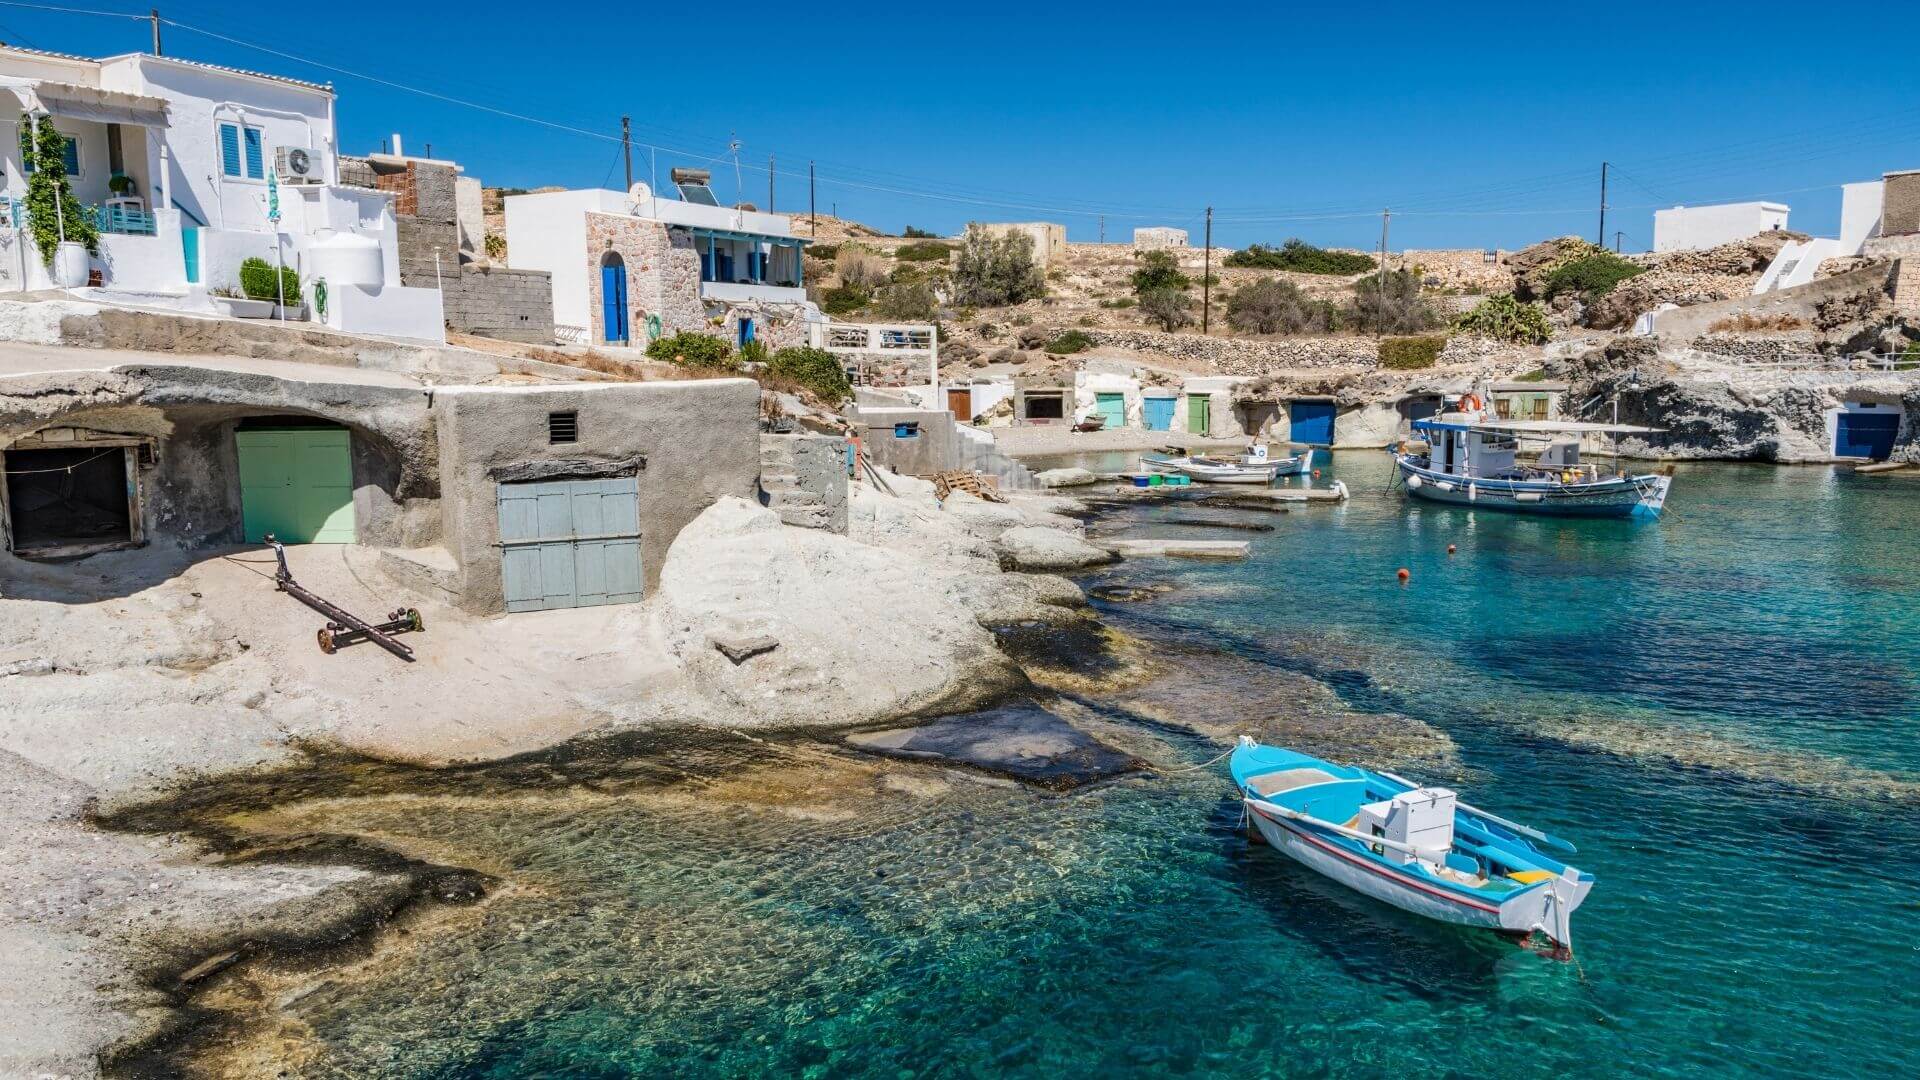 Κίμωλος: Το νησί του Αιγαίου με τους γραφικούς κολπίσκους που αξίζει να επισκεφθείτε (φώτο)